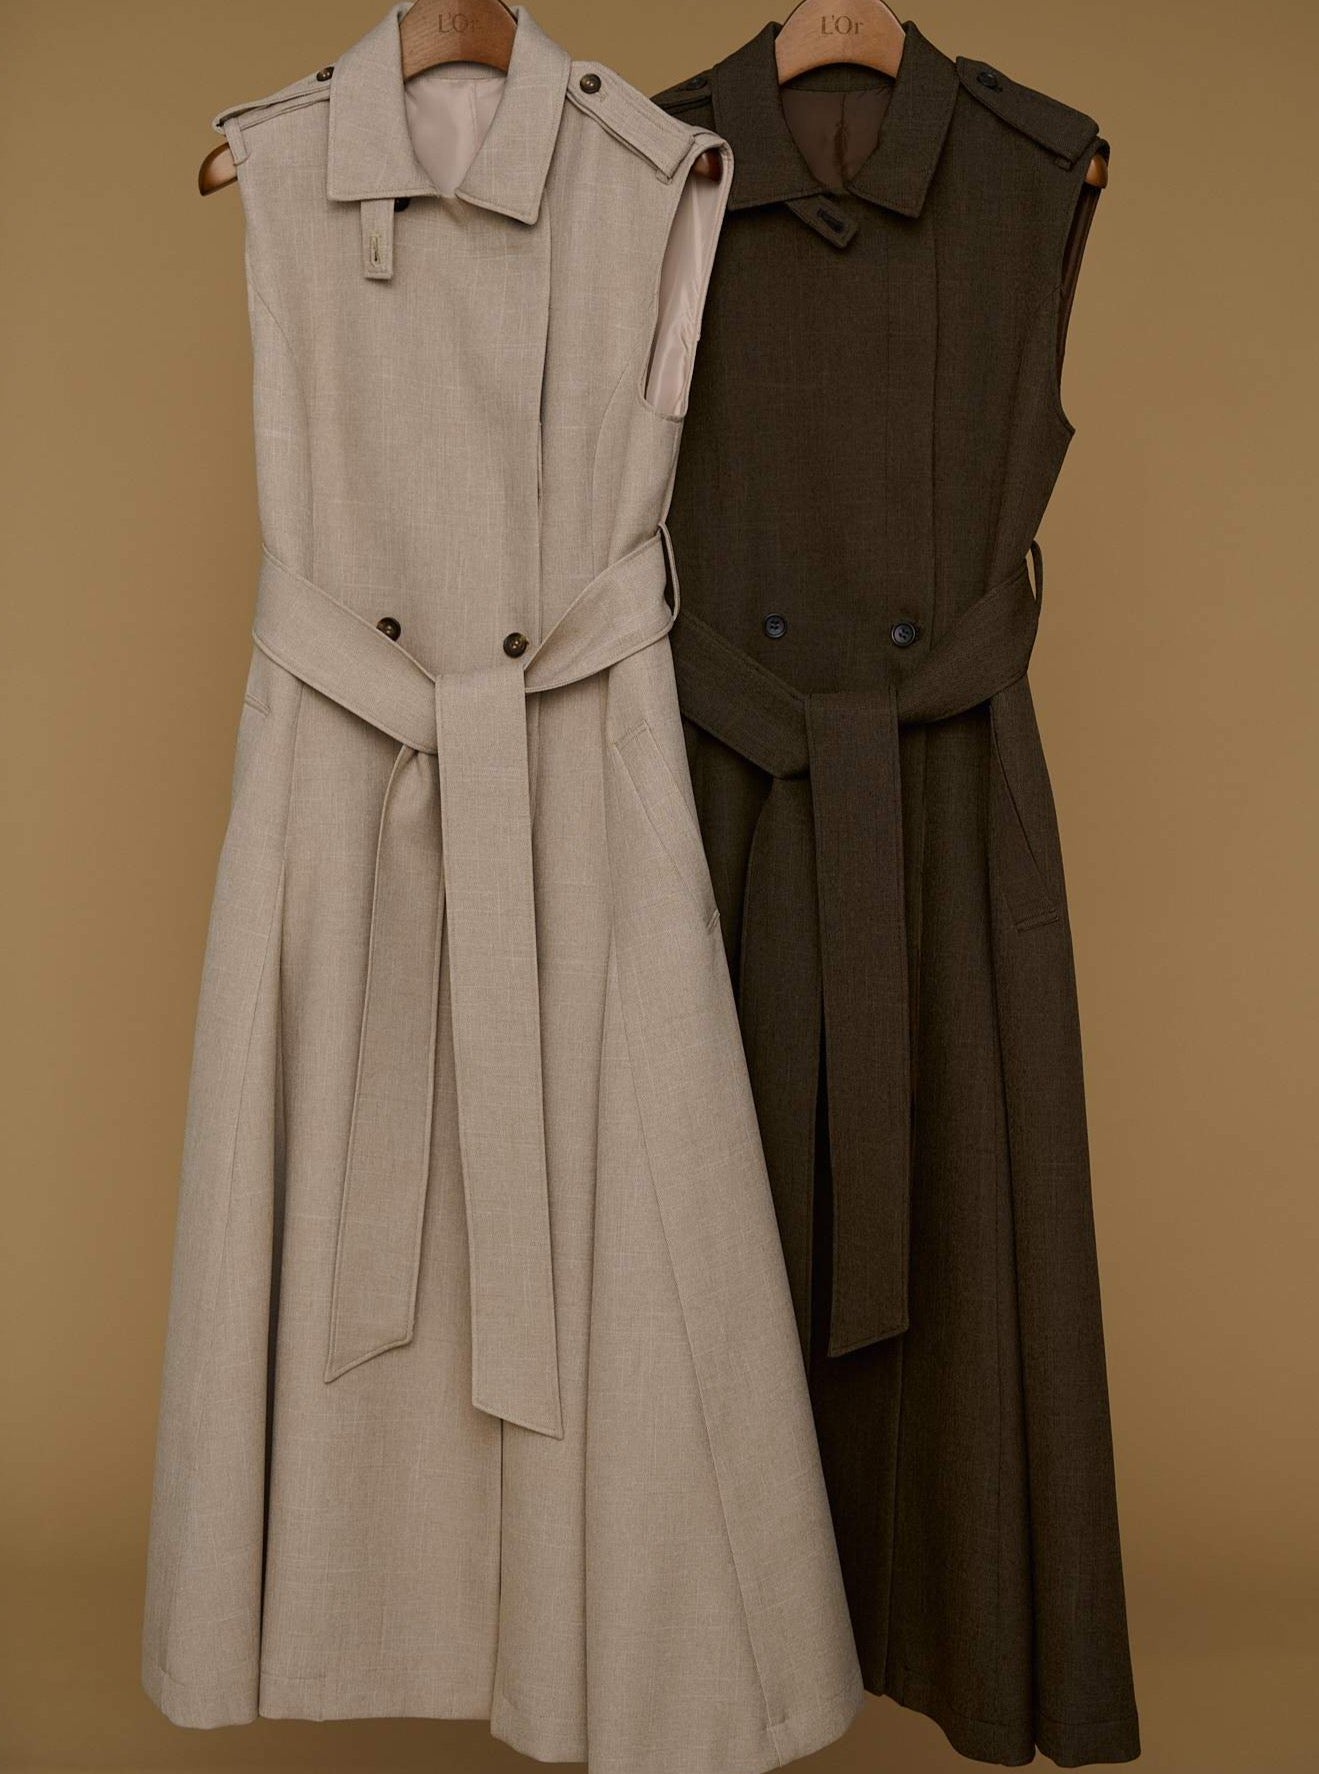 L'or ロル Sleeveless Coat Dress | eclipseseal.com